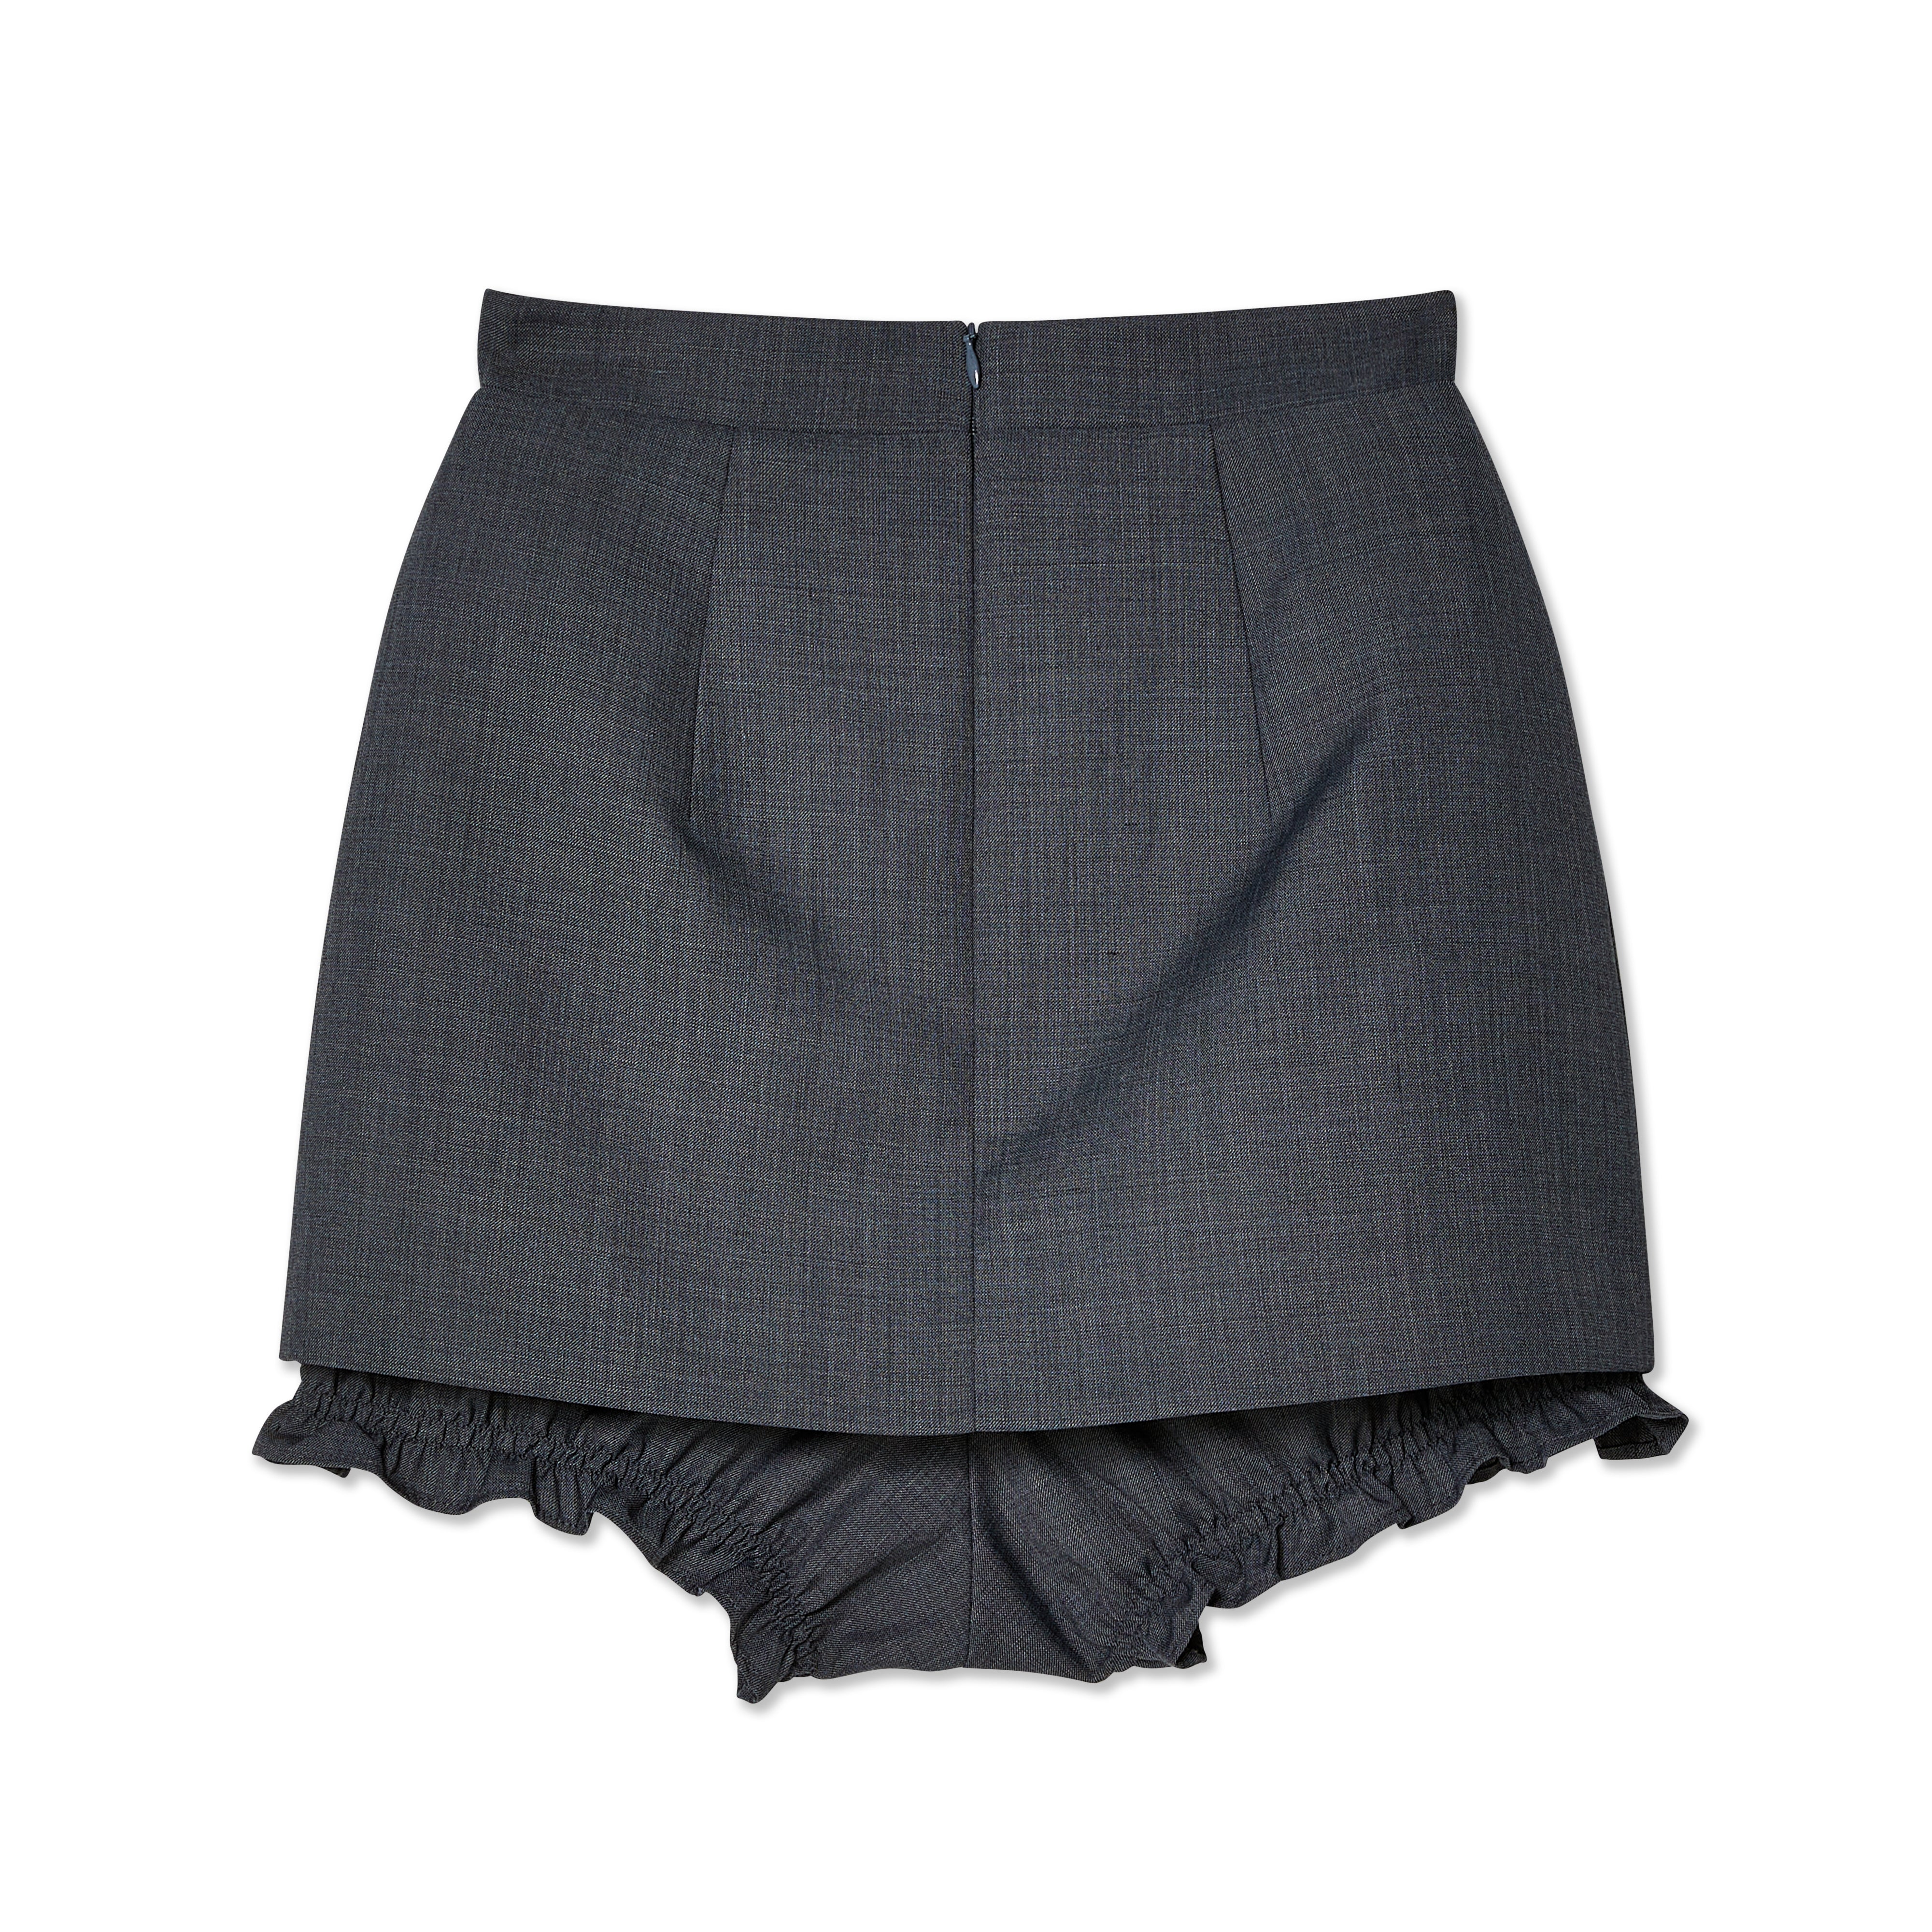 SHUSHU/TONG - Women's Double-Layered Skirt - (Grey)